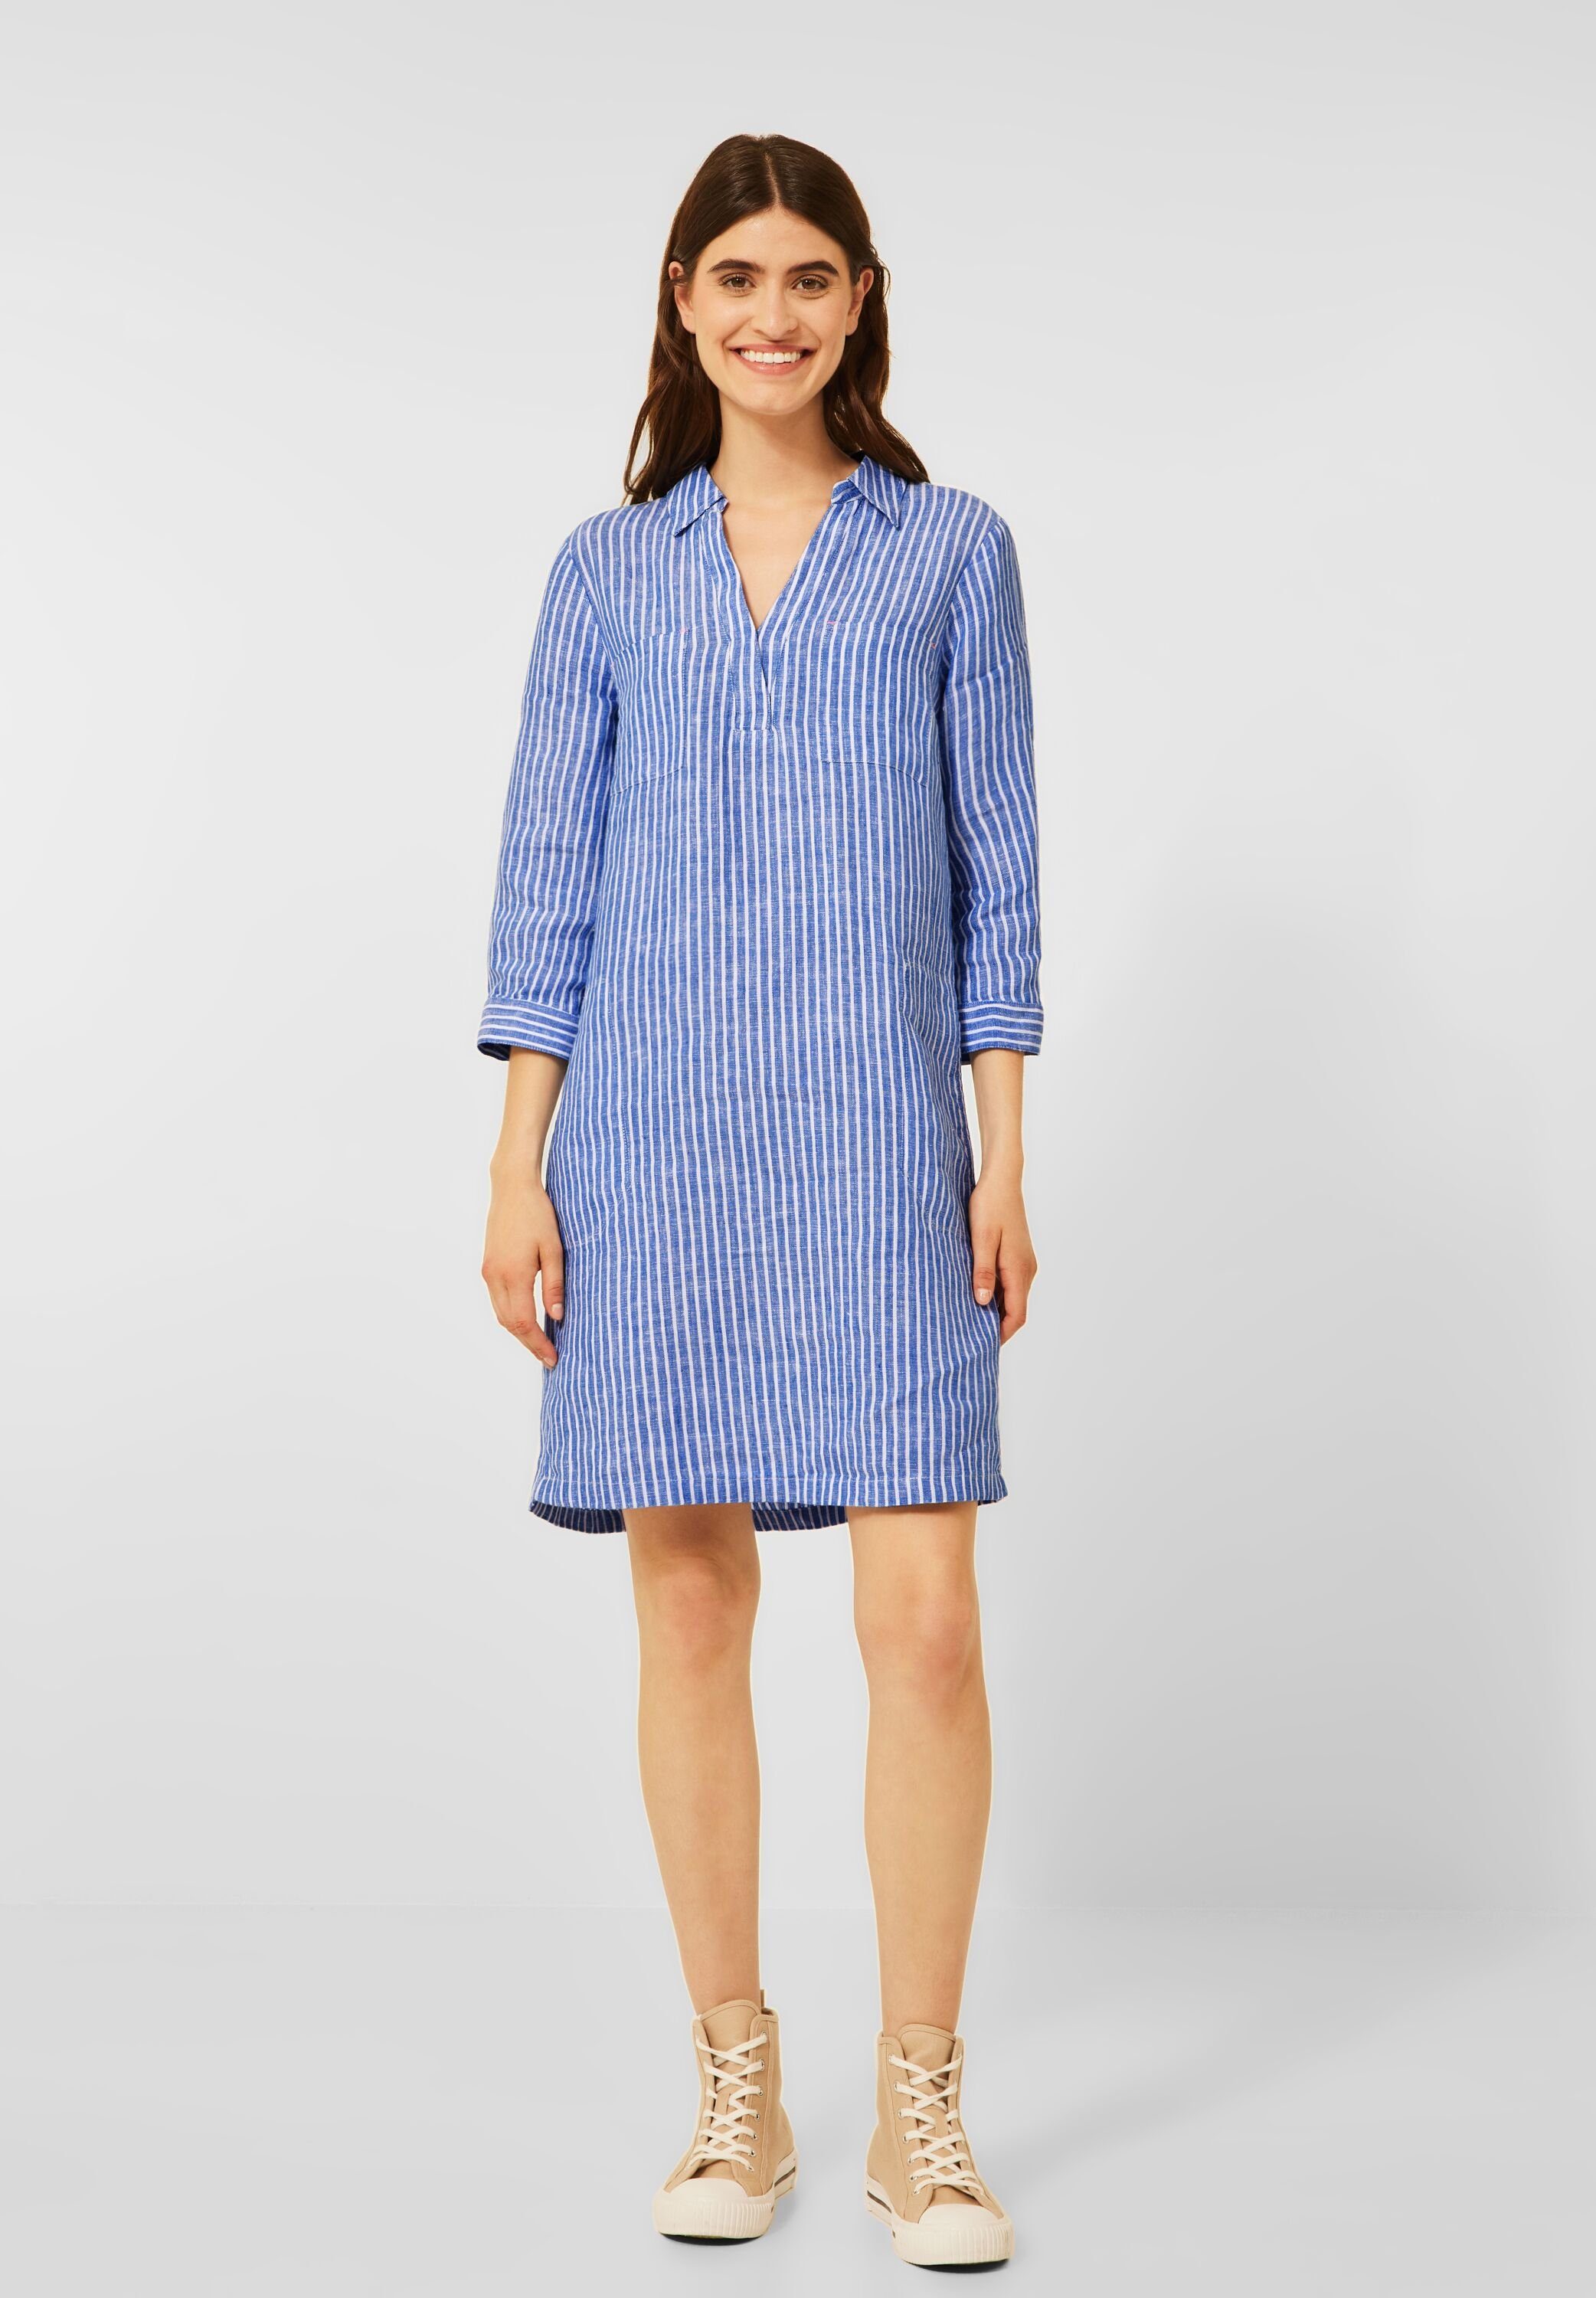 Cecil Blusenkleid mit Streifen Muster, Kleid online kaufen | OTTO